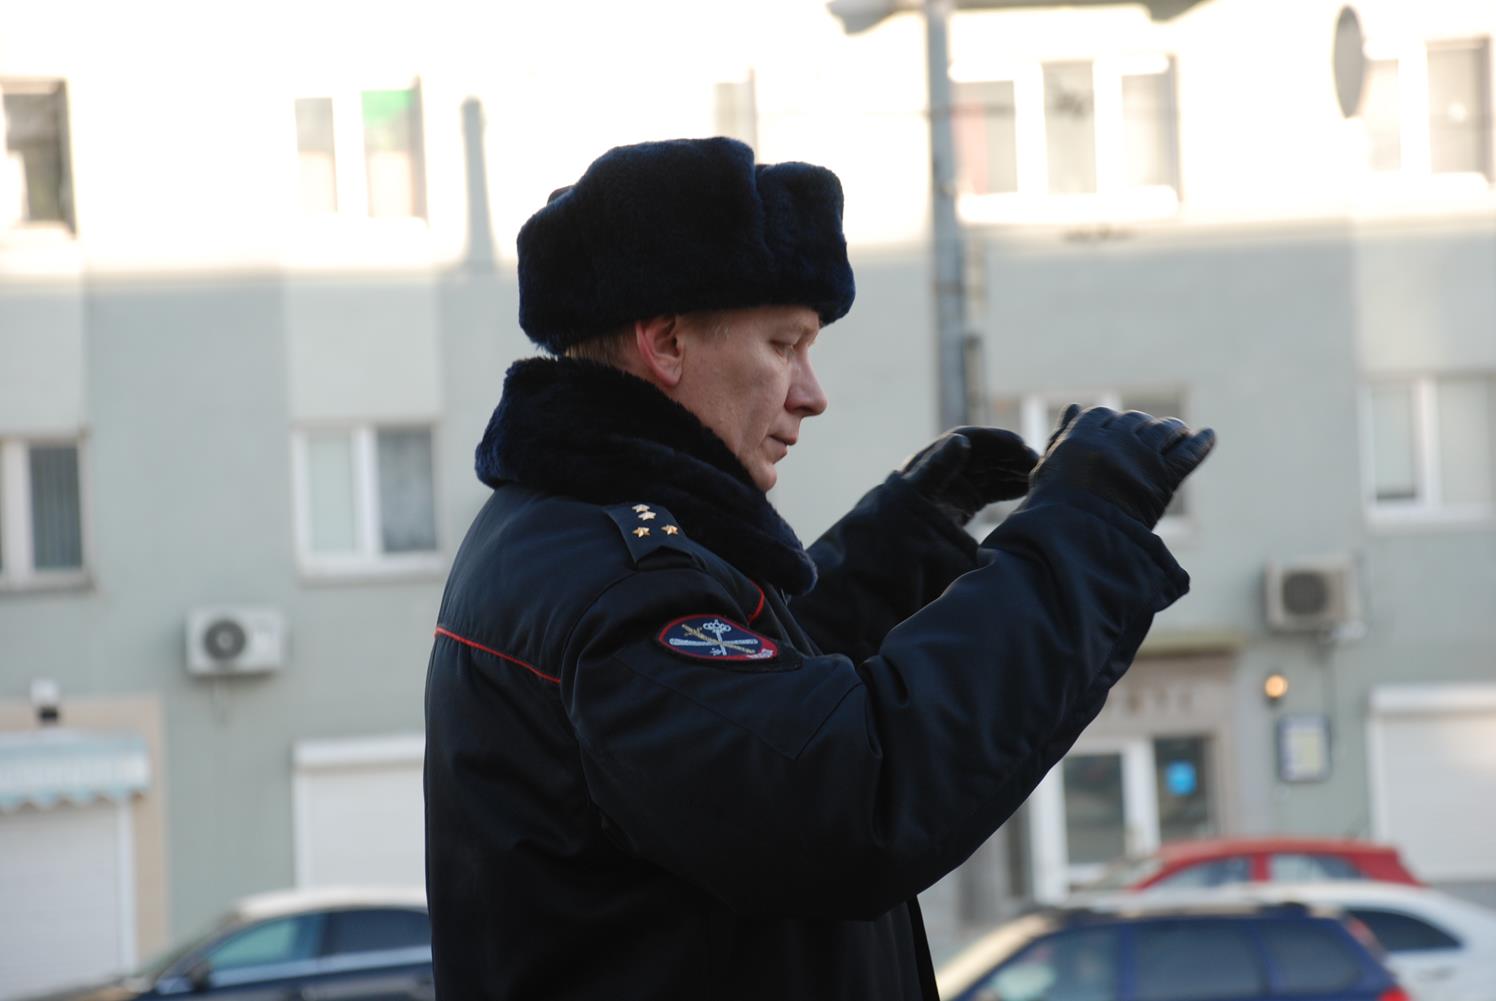 Оркестр нижегородской полиции сделал музыкальный подарок женщинам (ФОТО, ВИДЕО) - фото 3